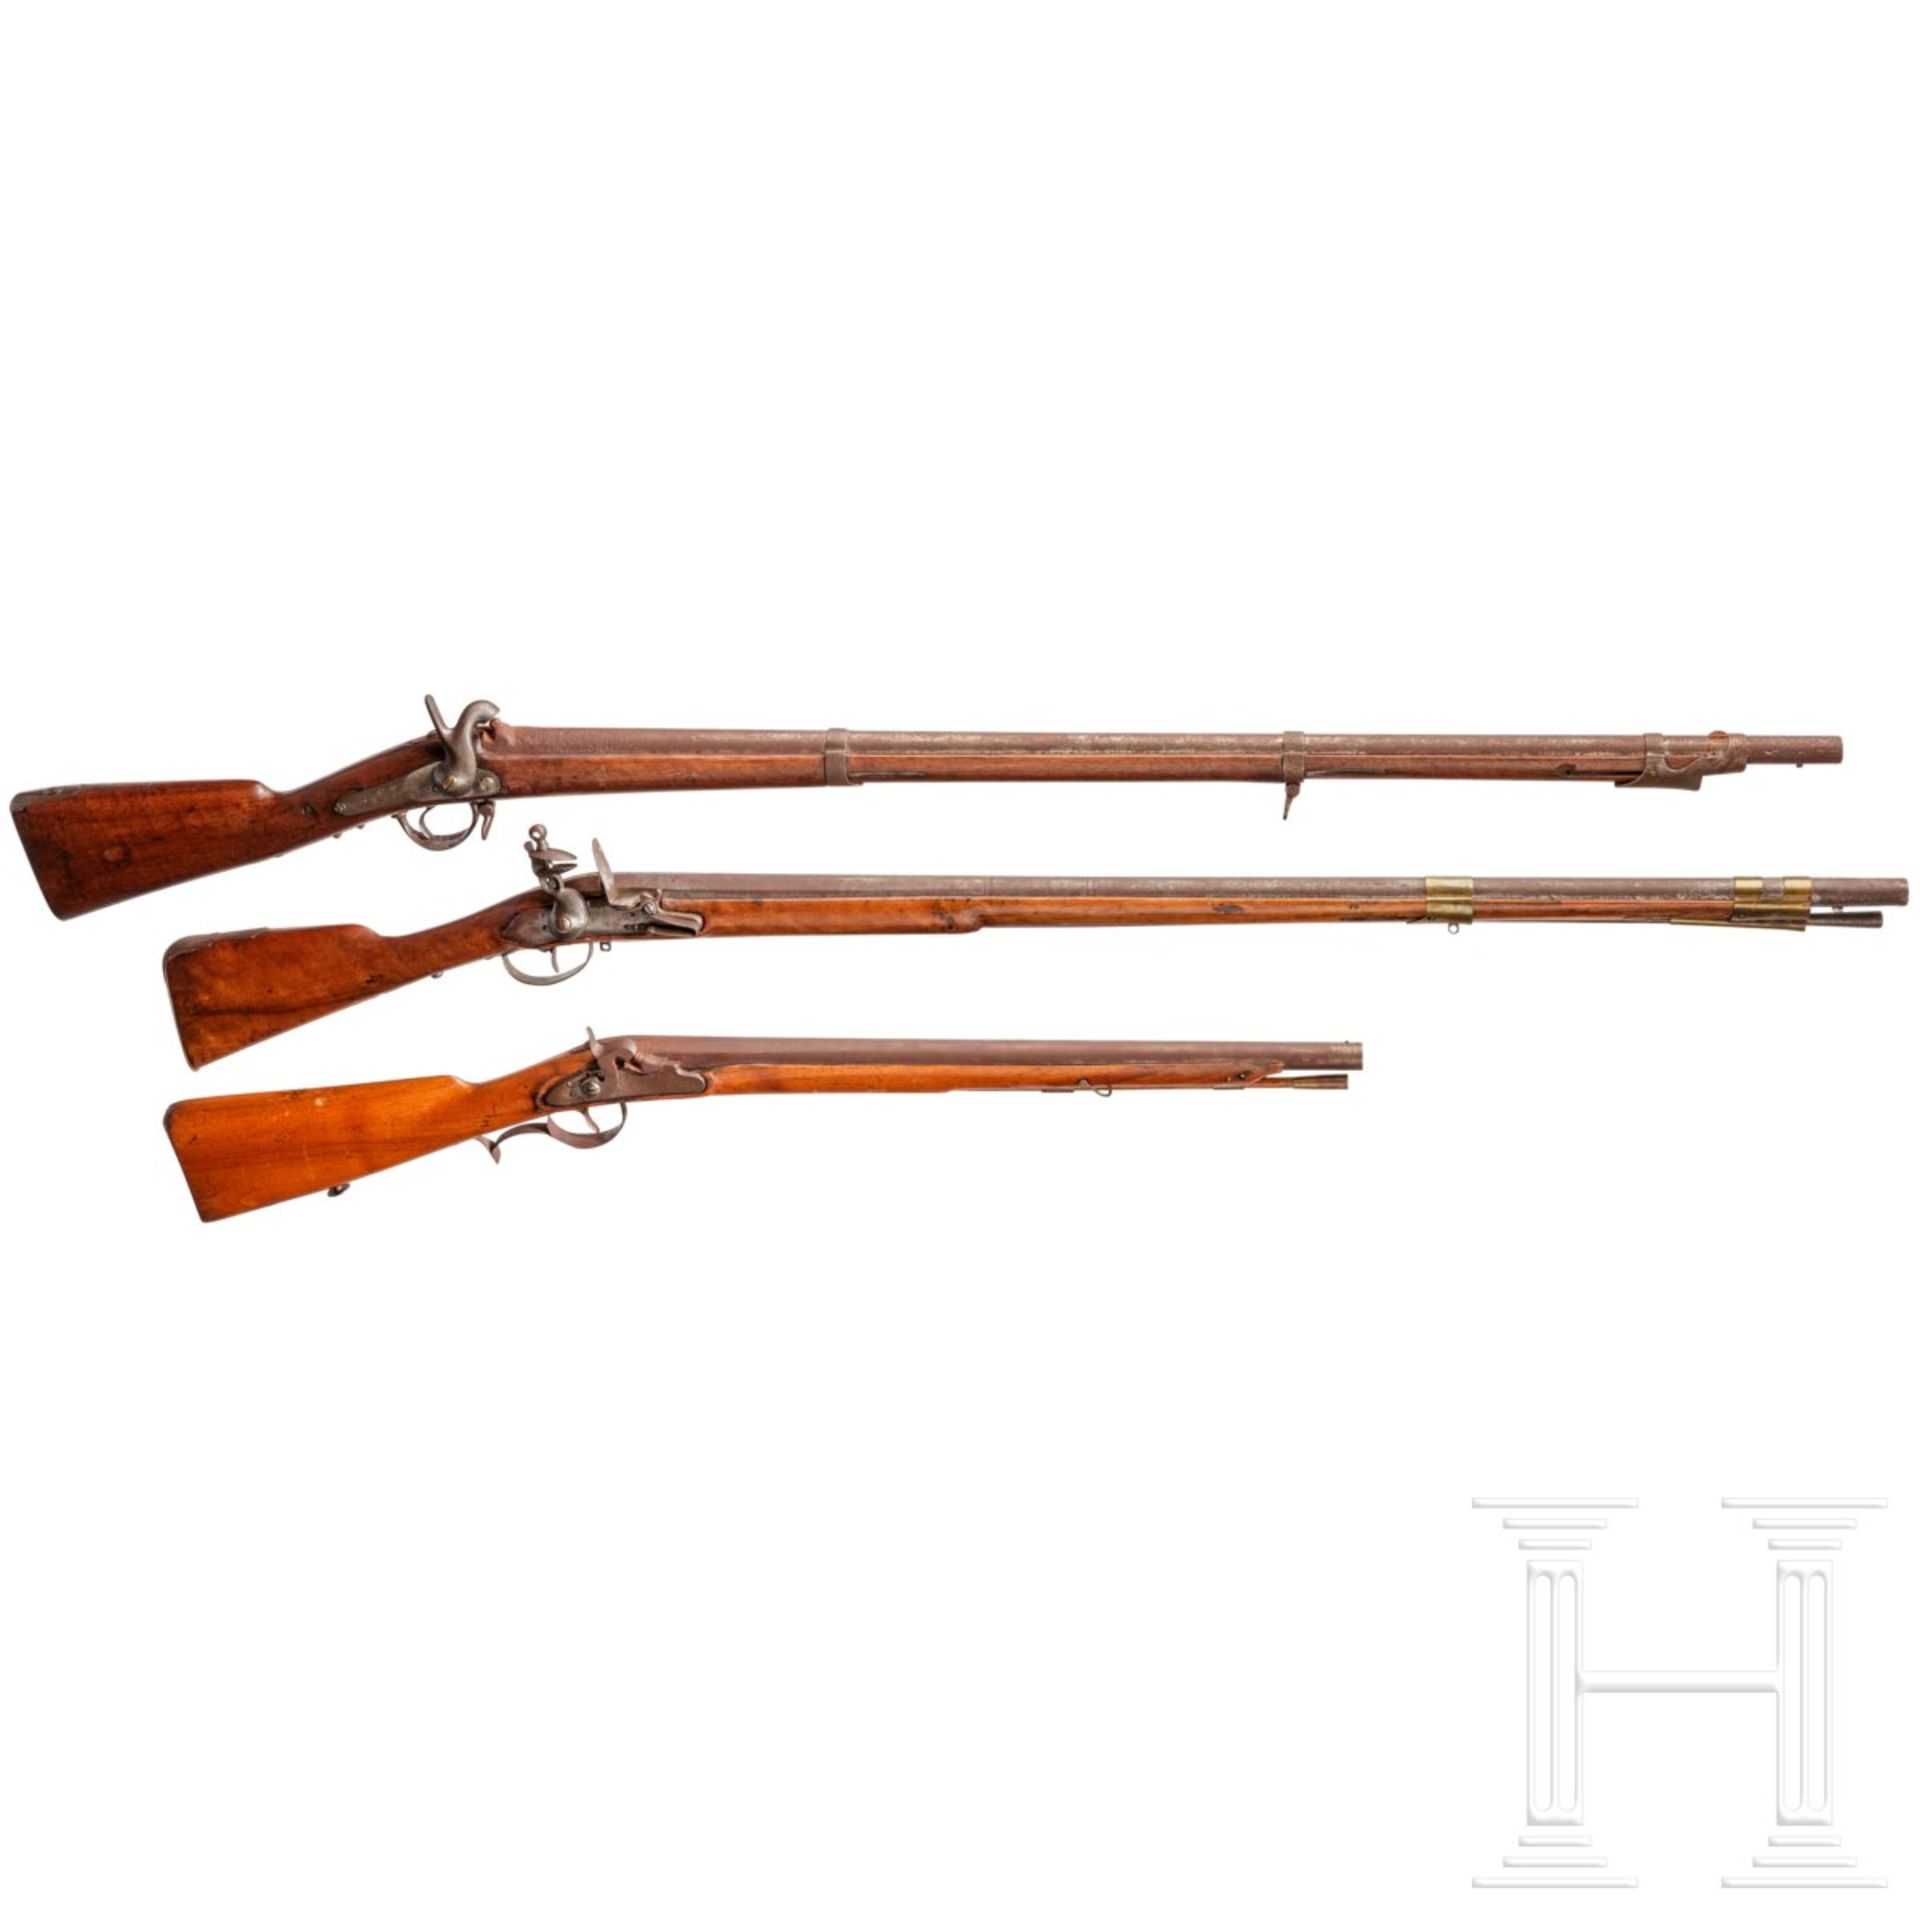 Infanteriemuskete M 1854 und zwei ausländische Gewehre